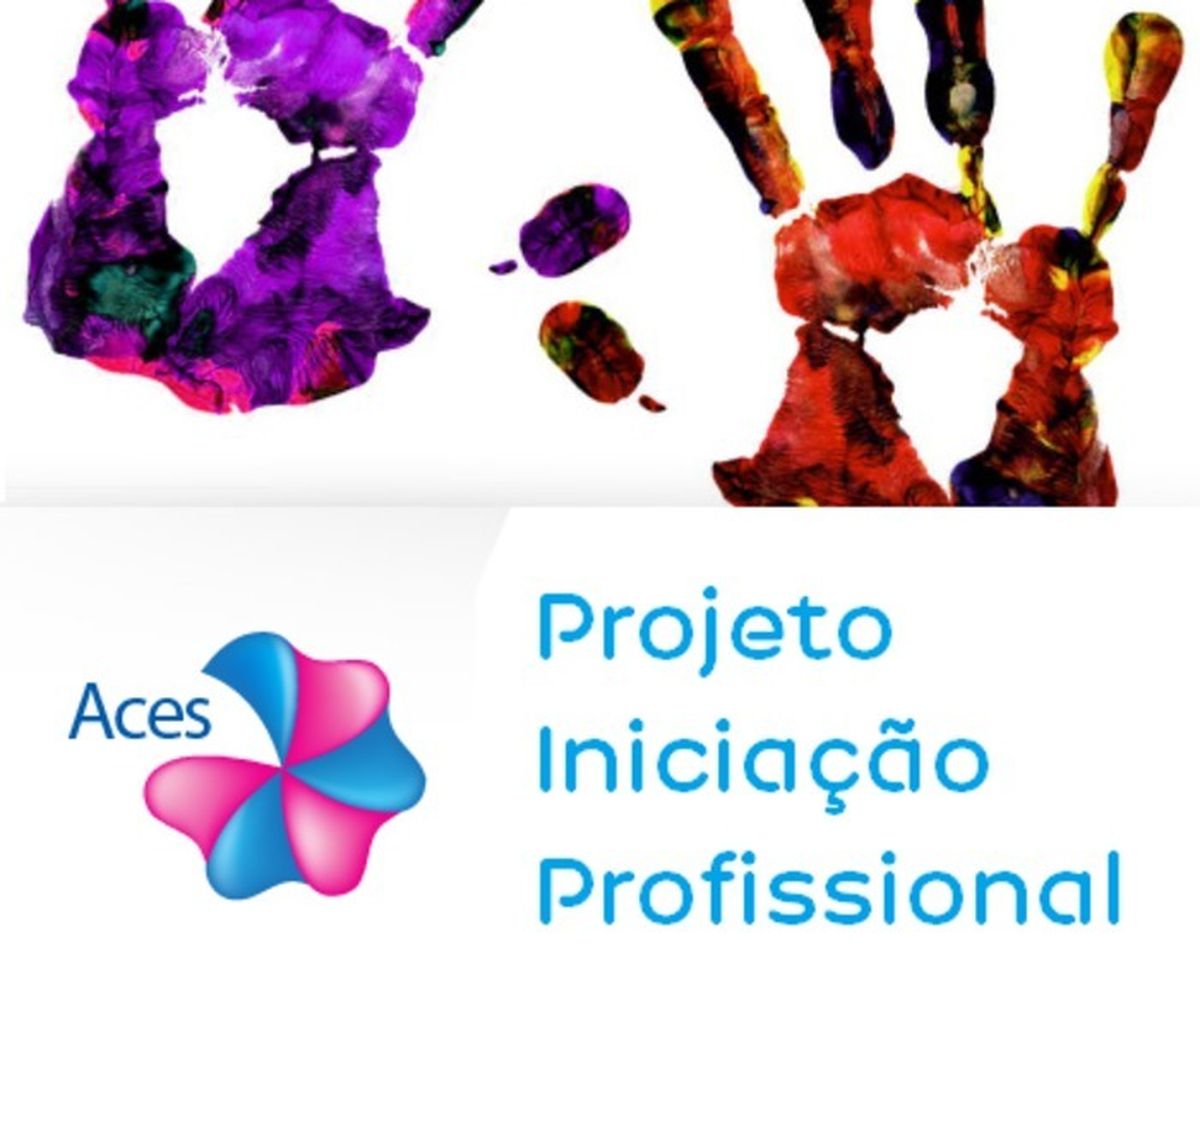 ACES - Projeto Iniciação Profissional